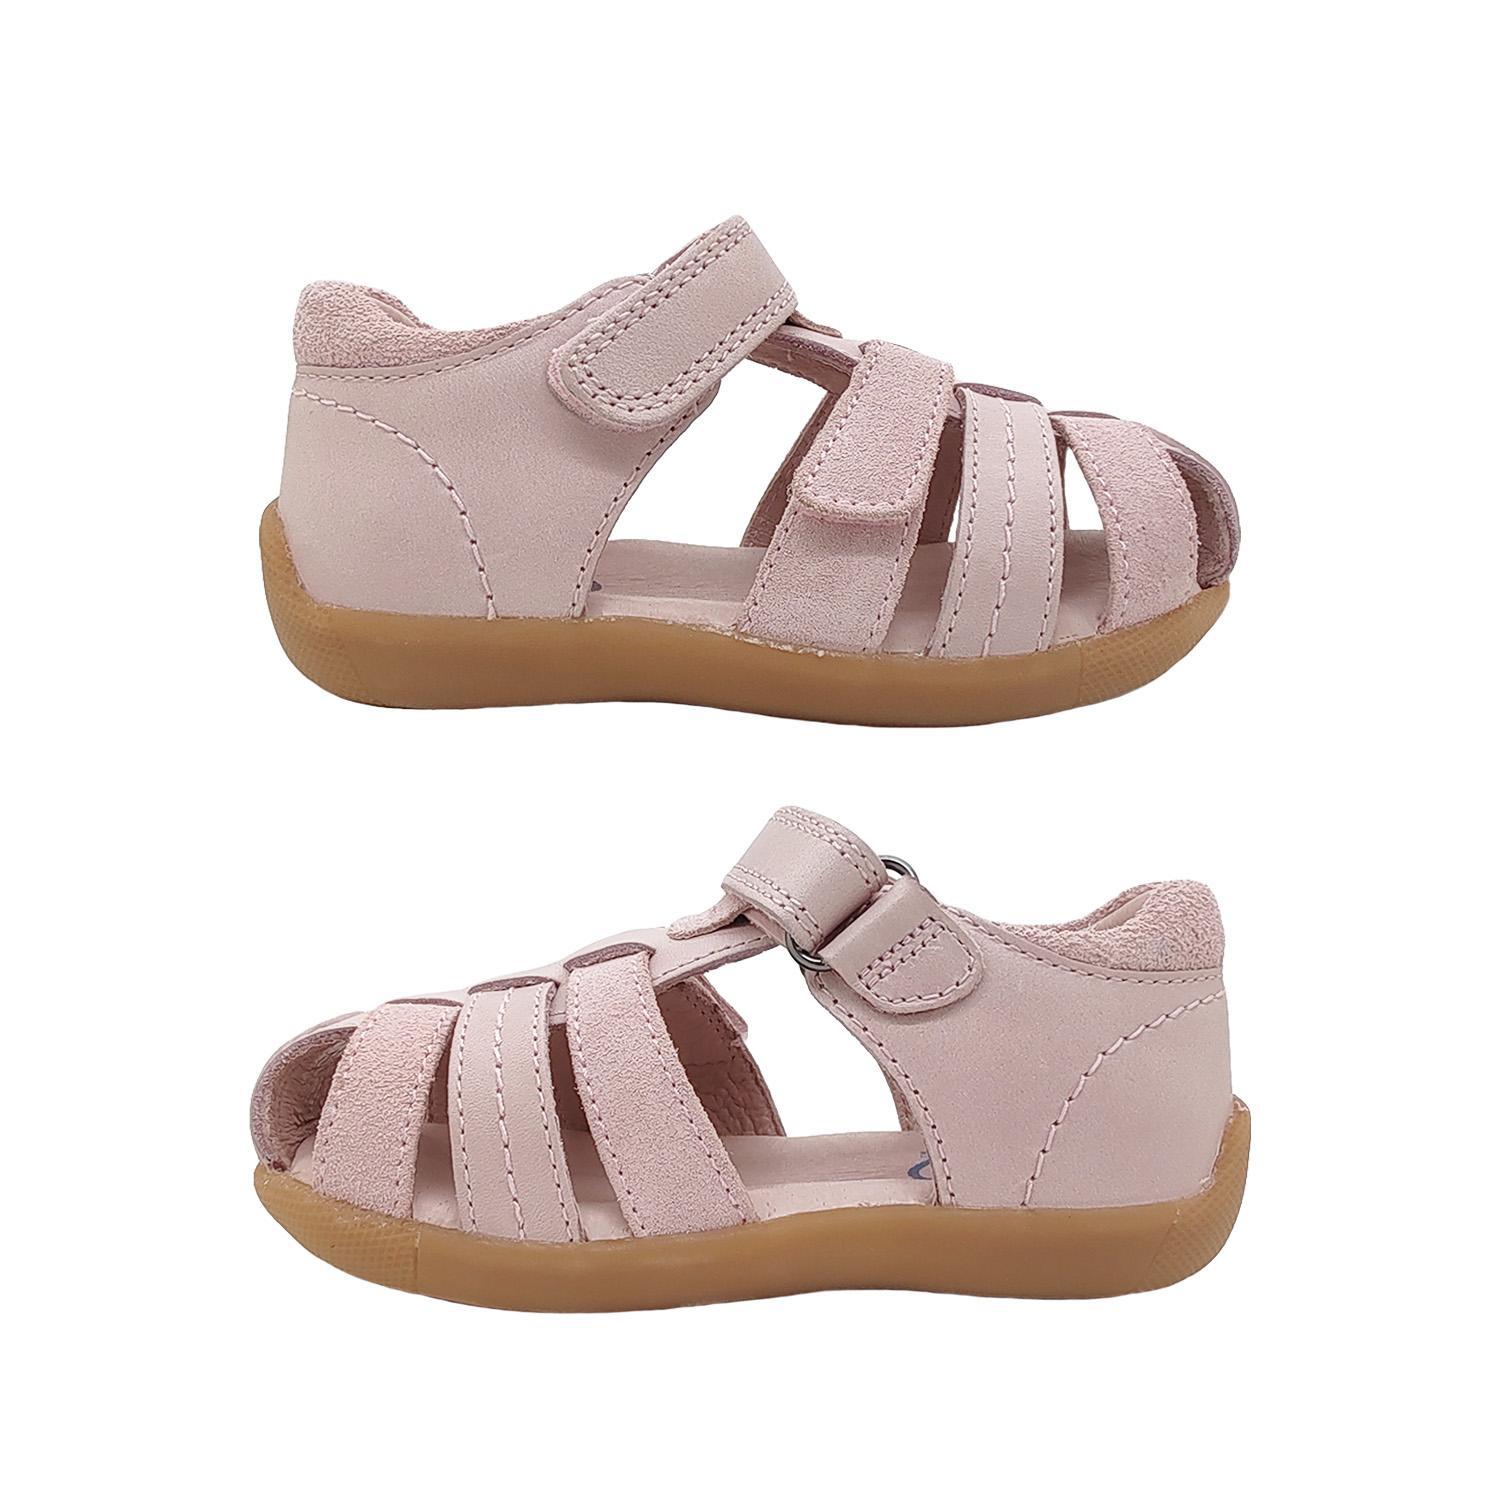 Surefit Alex Little Girls Sandals Leather Upper Toddler Back in Toe Cover Adjust-Pink-30